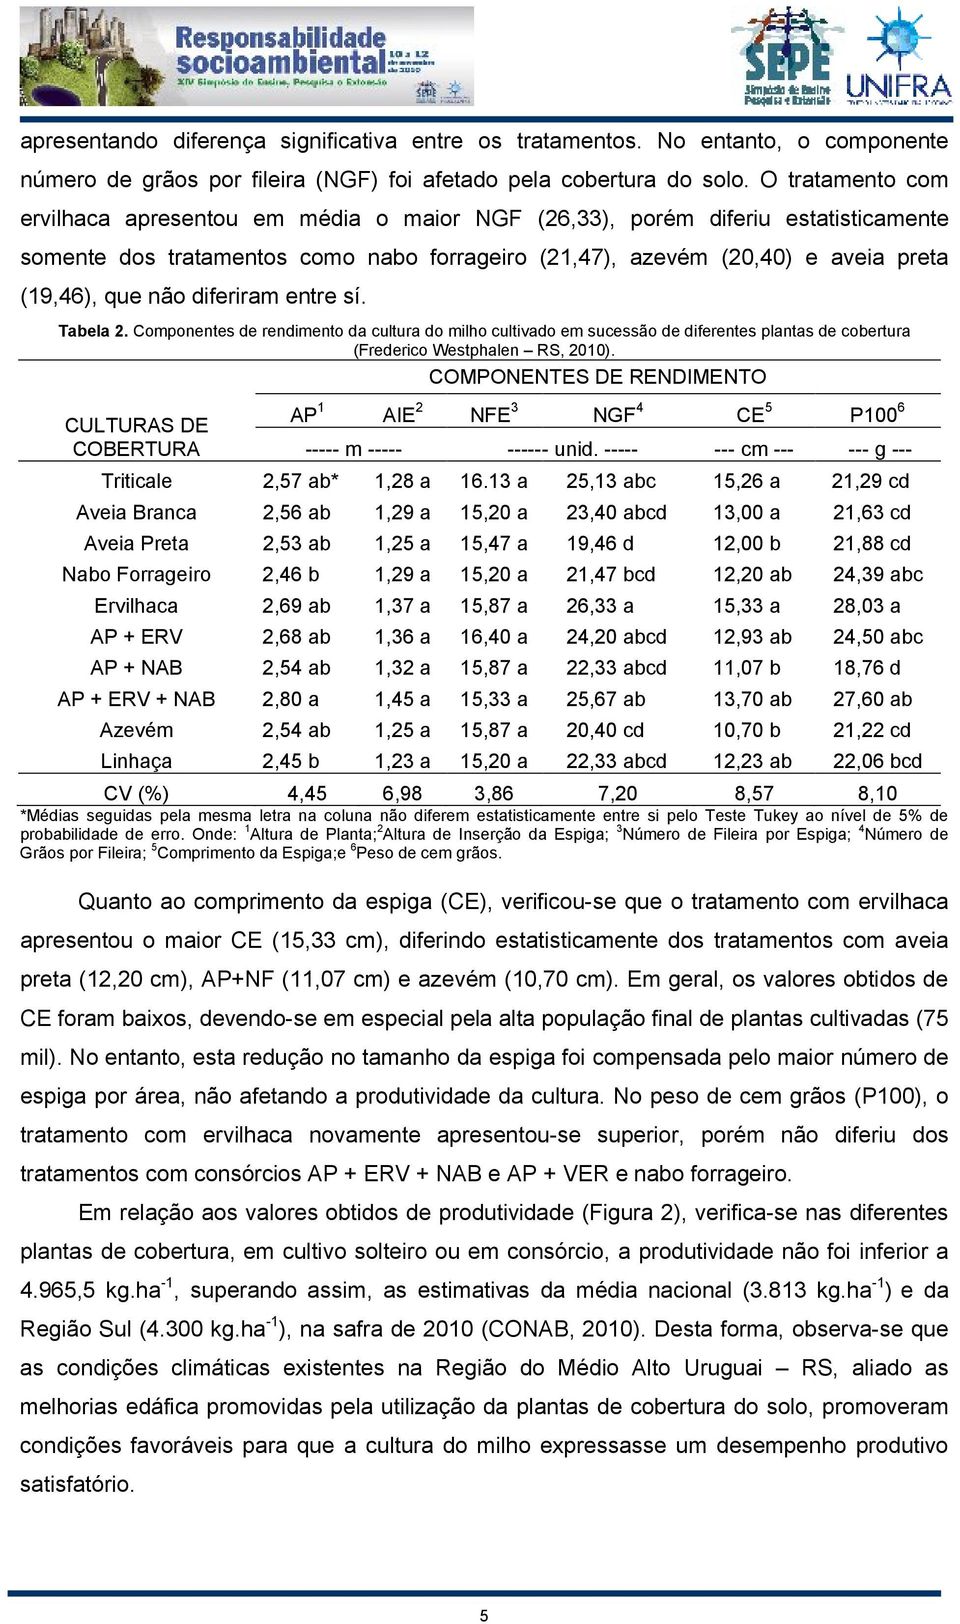 diferiram entre sí. Tabela 2. Componentes de rendimento da cultura do milho cultivado em sucessão de diferentes plantas de cobertura (Frederico Westphalen RS, 2010).